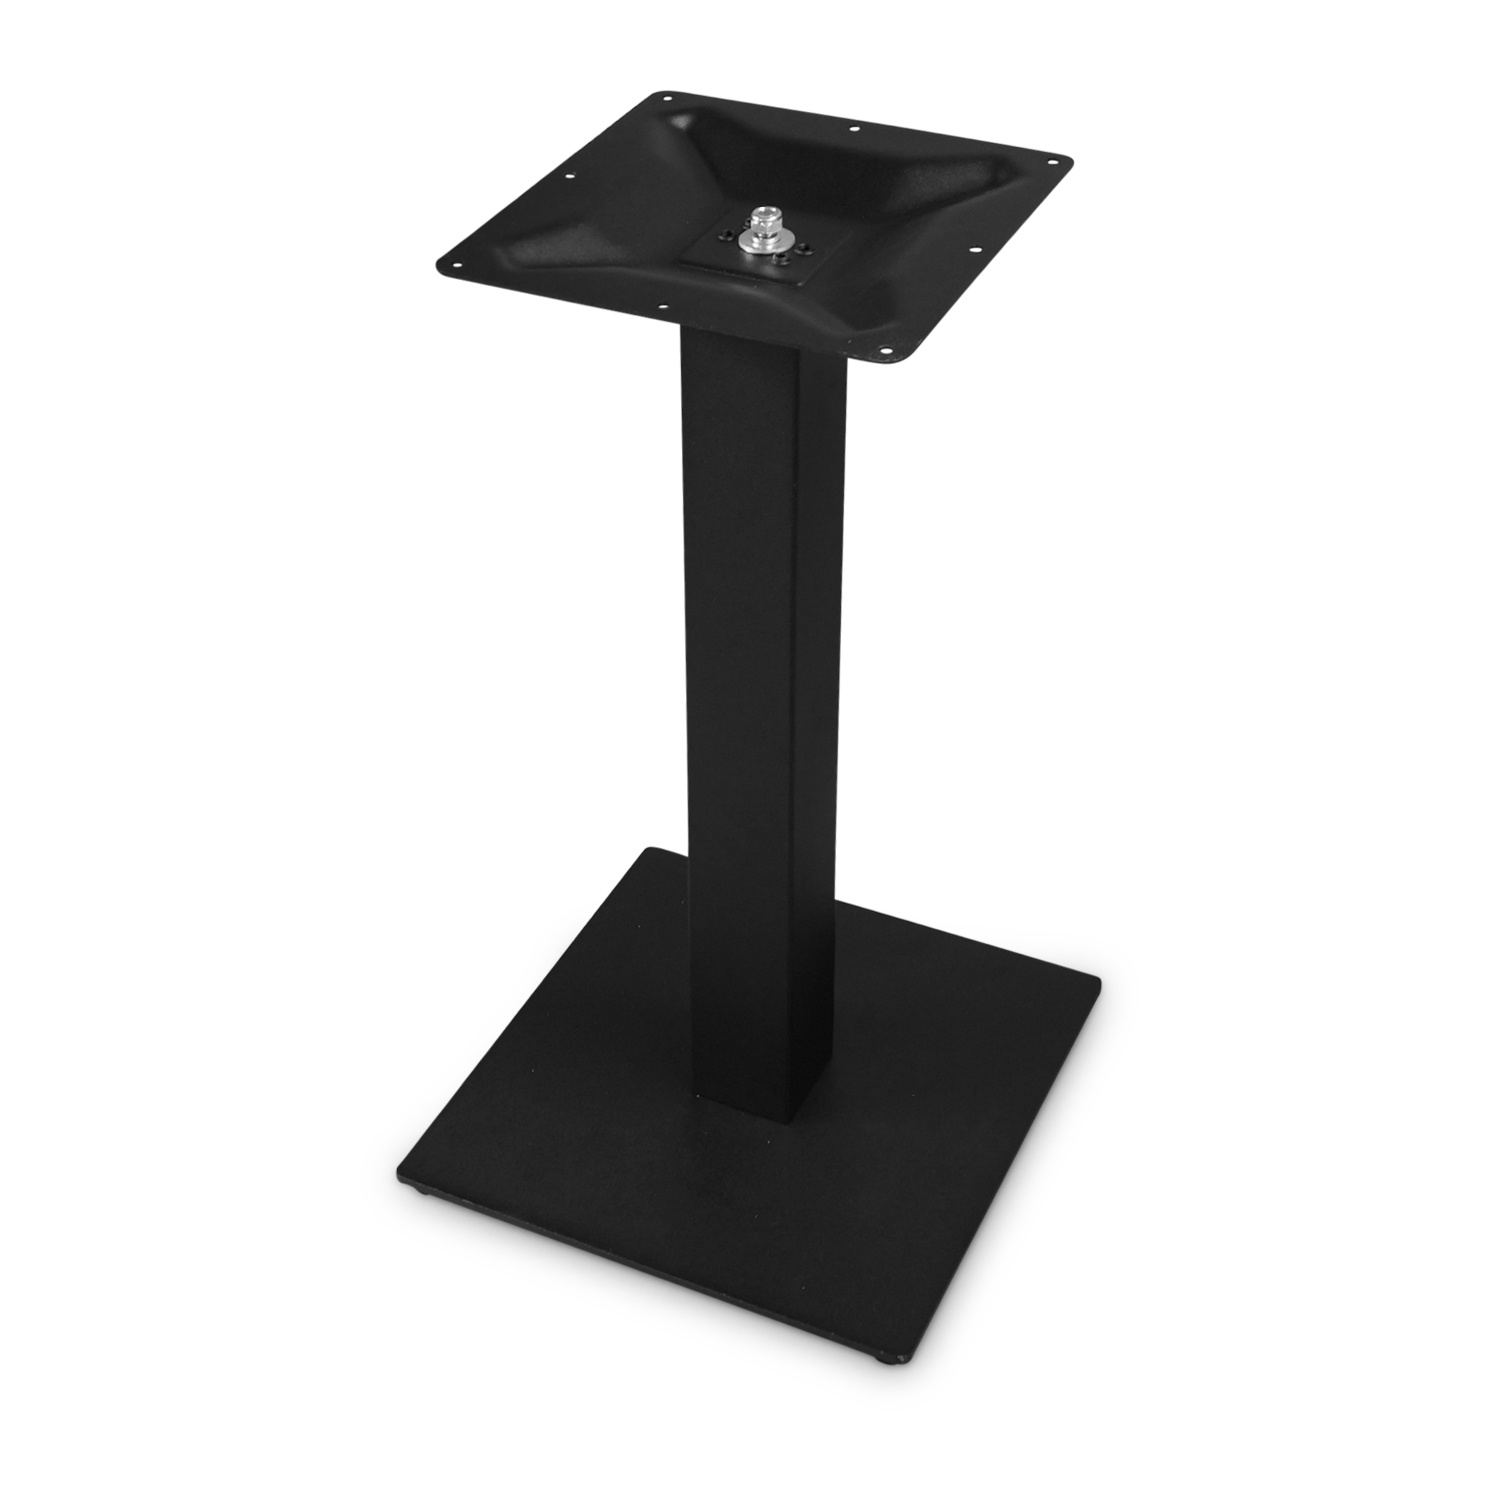  Gietijzeren (horeca)tafel onderstel vierkant zwart - op voet - 8x8 cm - 72 cm hoog - 40x40 cm (voet)plaatafmeting - Zwart gecoat (fijnstructuur)